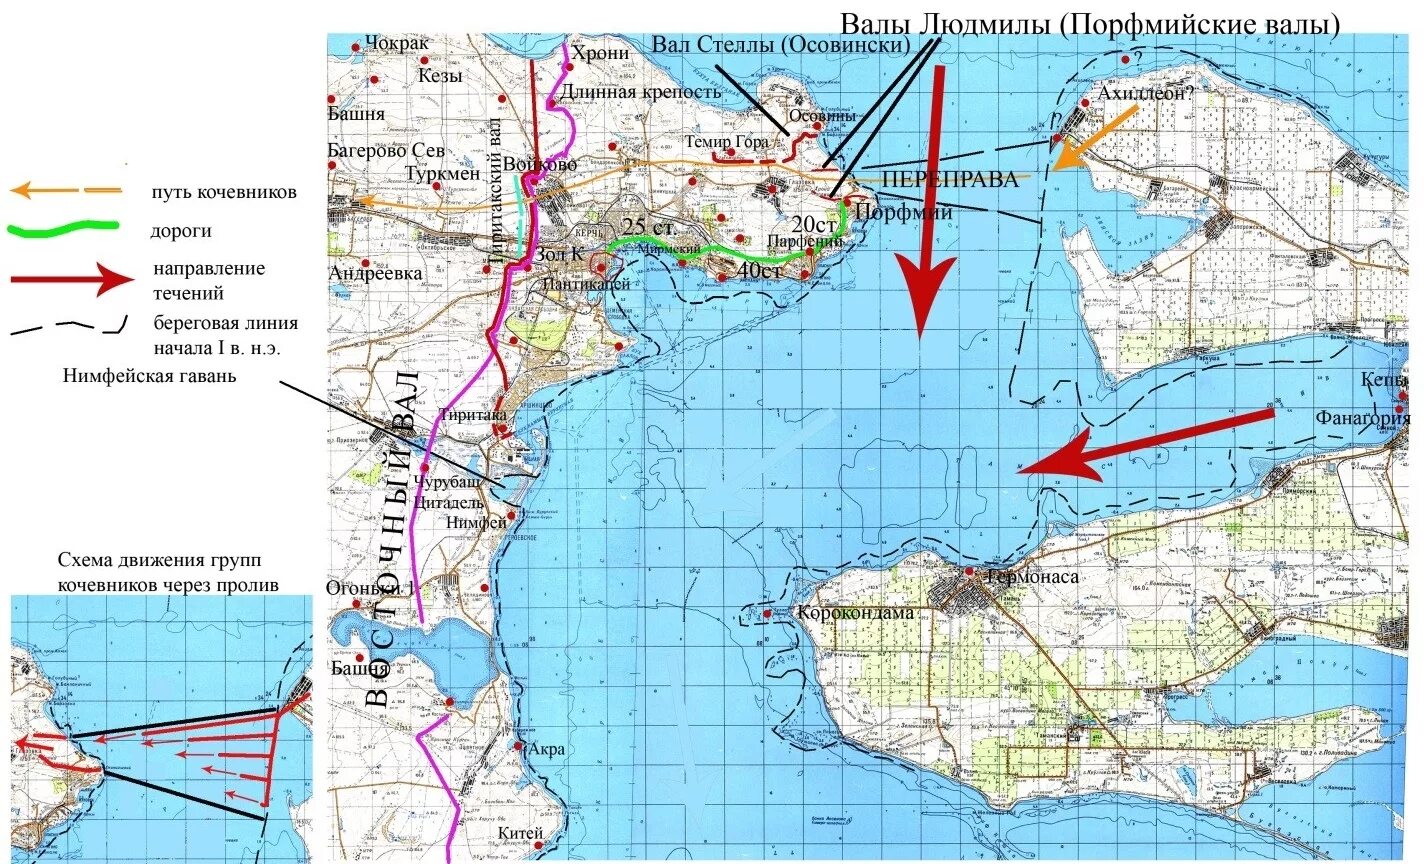 Мысы керченского пролива. Азовское море Керченский пролив. Карта глубин Керченского пролива подробная. Керченский пролив карта дна. Морская навигационная карта Керченского пролива.